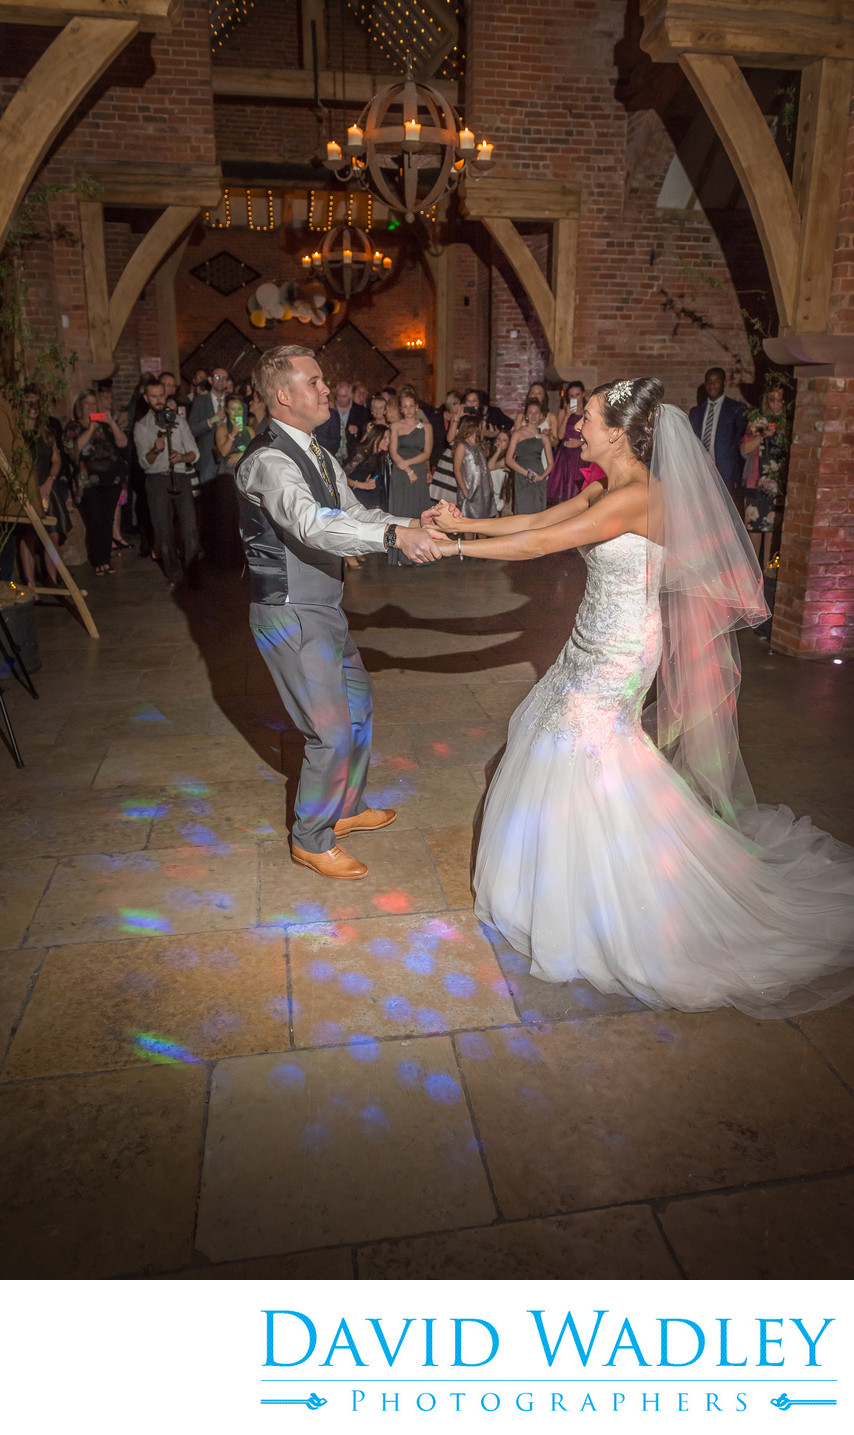 Dancing the wedding night away at Shustoke Barns Coleshill Birmingham.